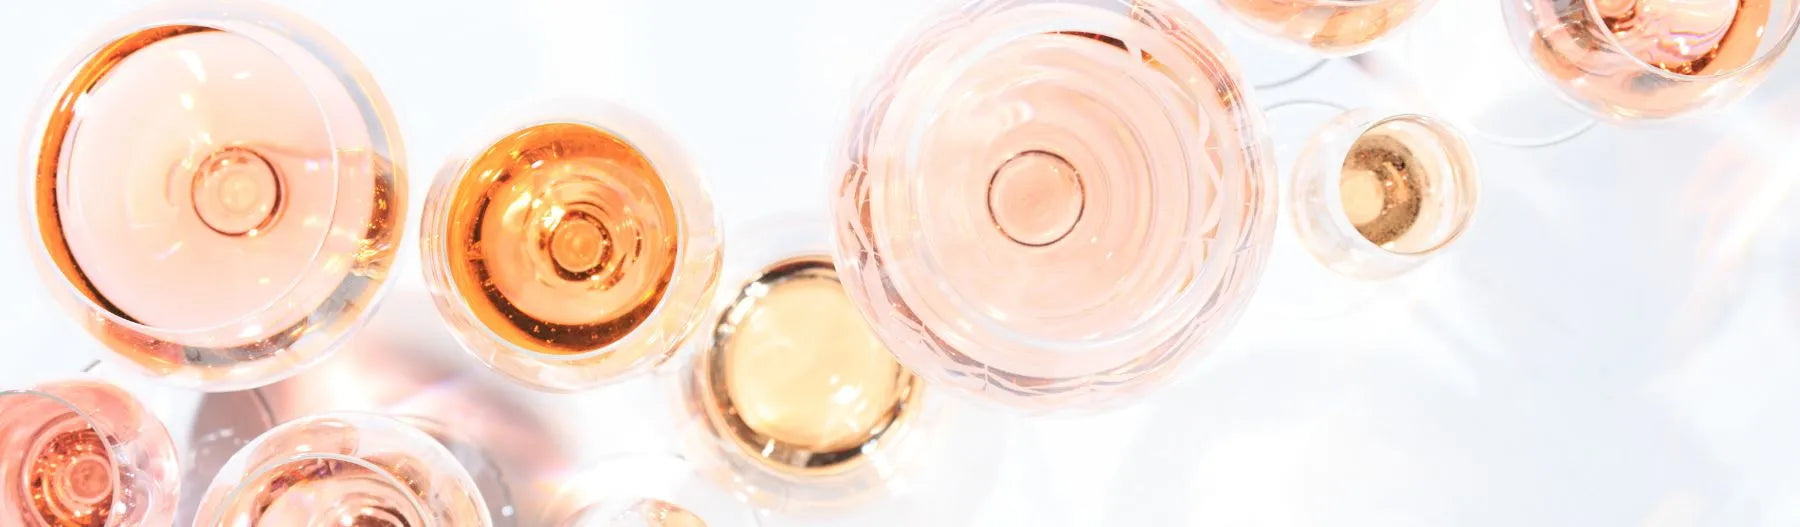 VIN ROSE SANS ALCOOL : découvrez notre collection de vin rosé dans alcool